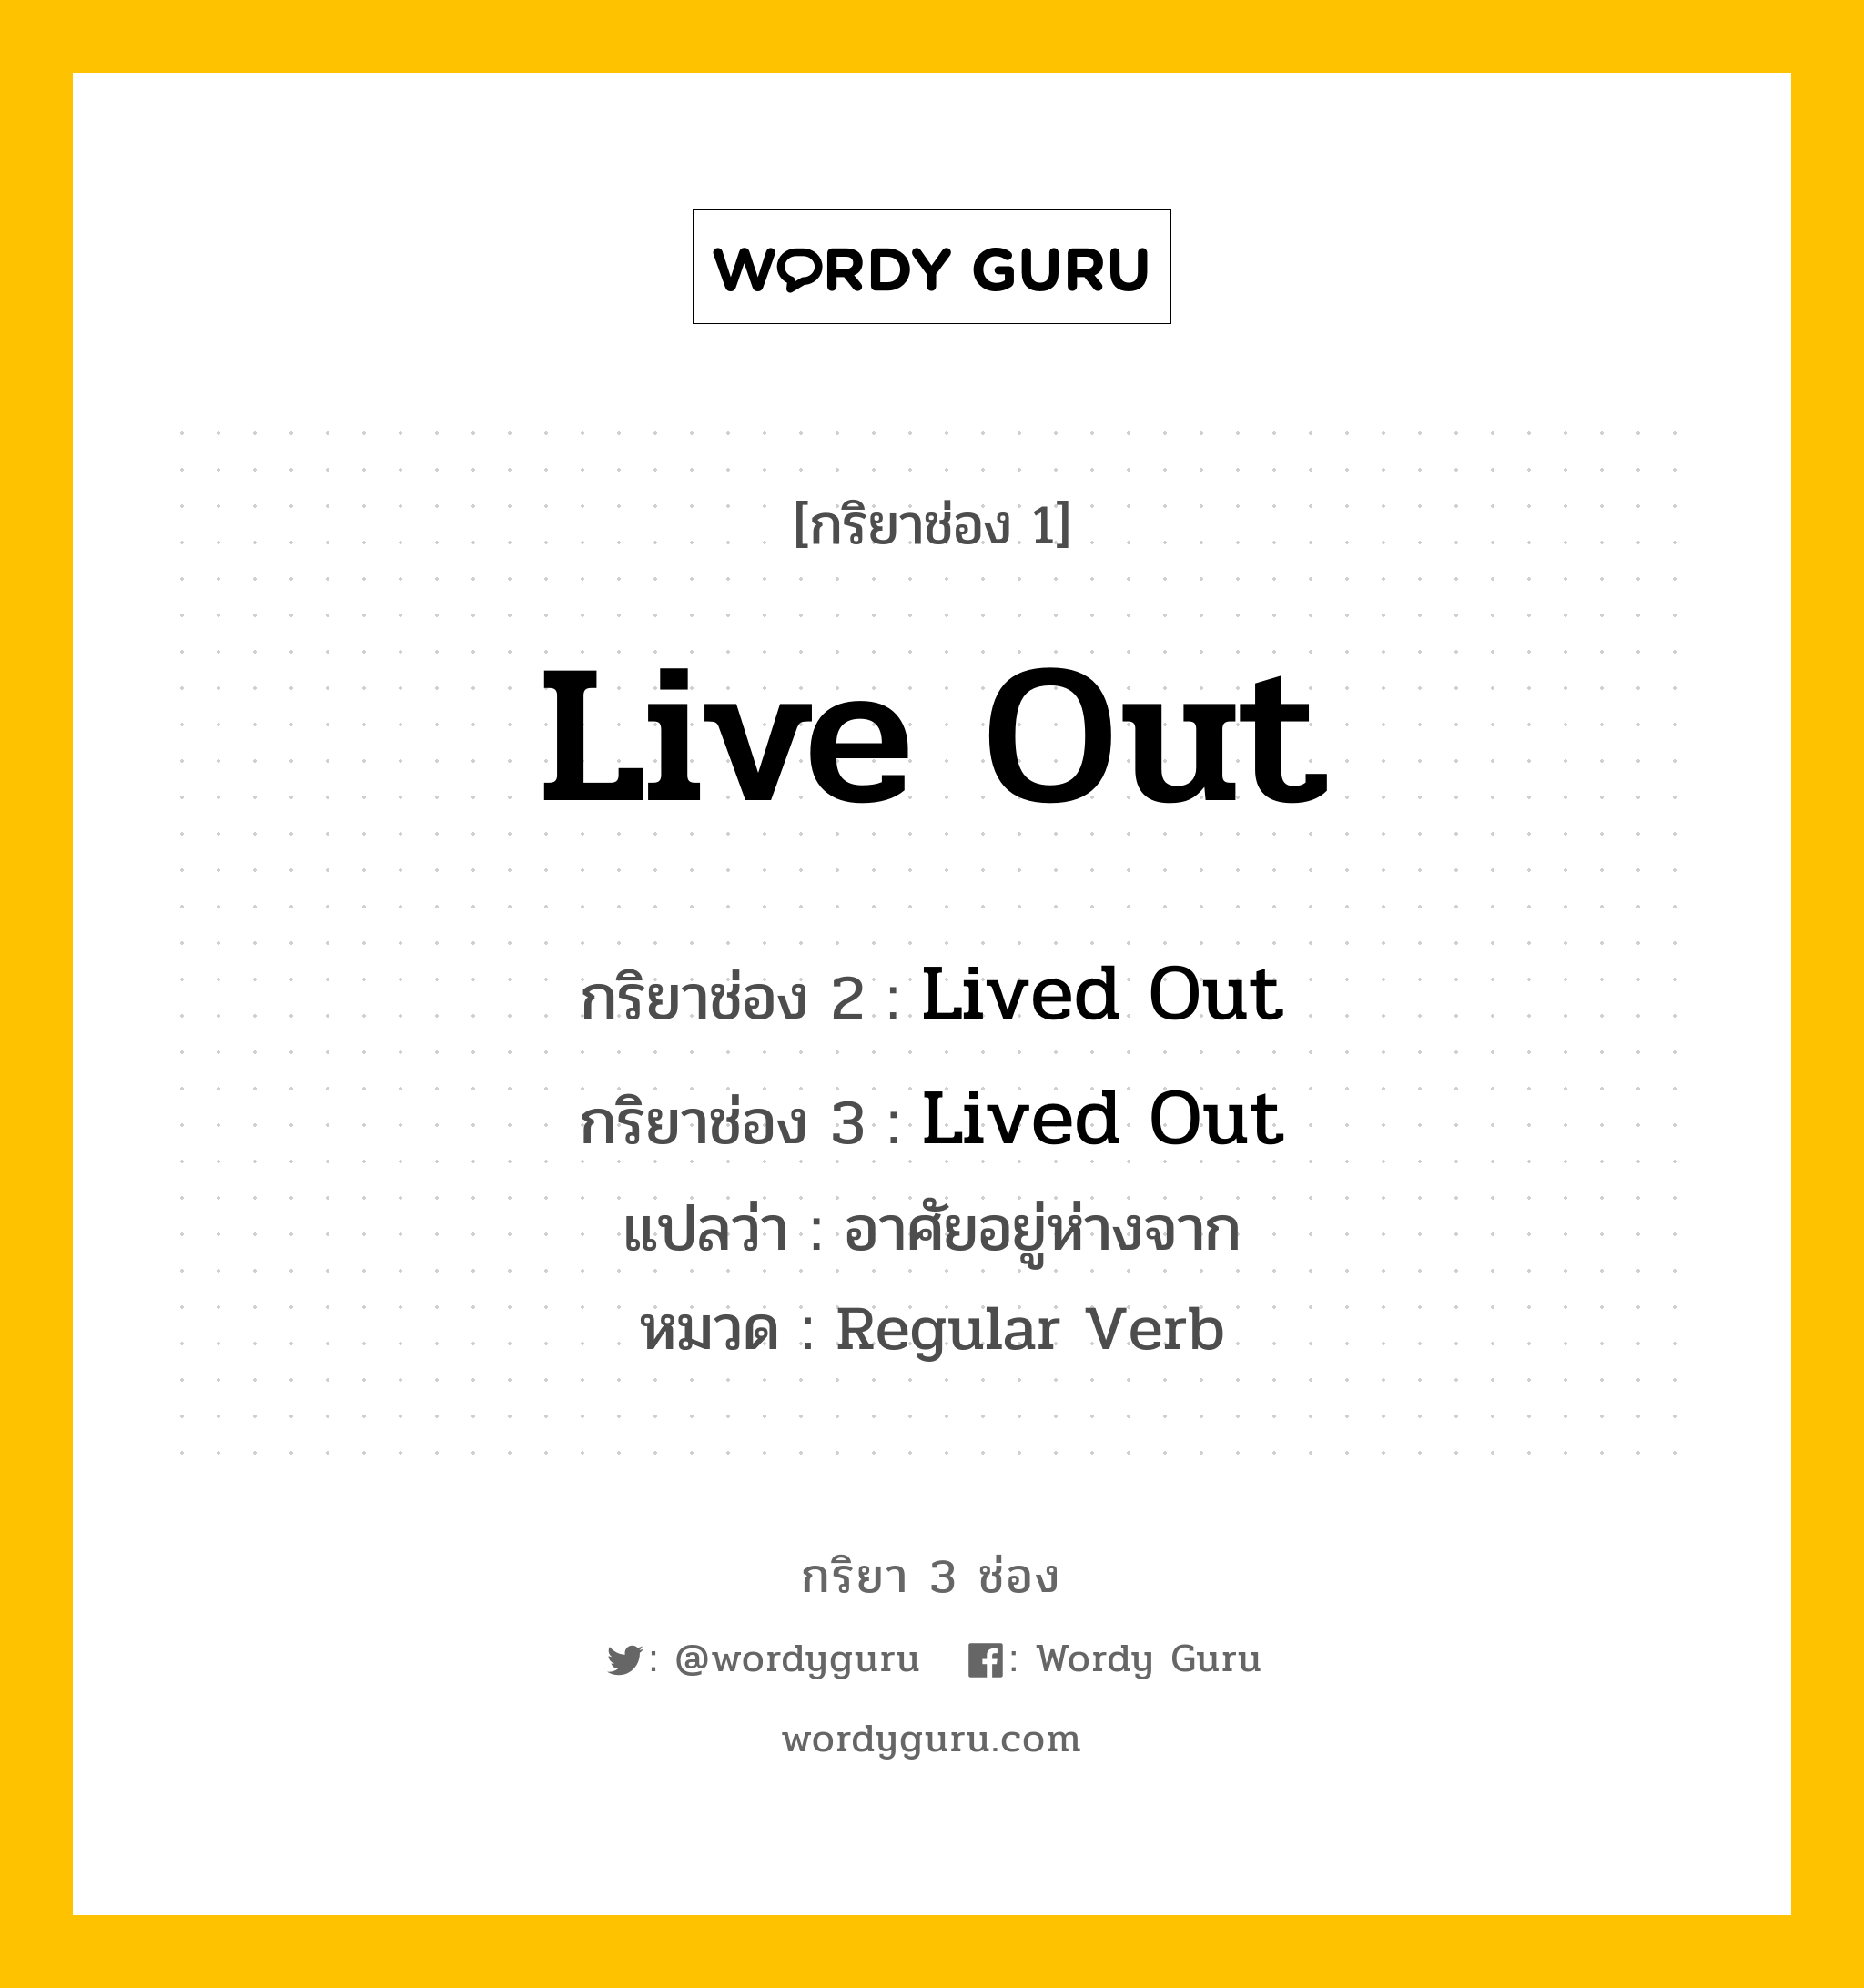 กริยา 3 ช่อง: Live Out ช่อง 2 Live Out ช่อง 3 คืออะไร, กริยาช่อง 1 Live Out กริยาช่อง 2 Lived Out กริยาช่อง 3 Lived Out แปลว่า อาศัยอยู่ห่างจาก หมวด Regular Verb หมวด Regular Verb